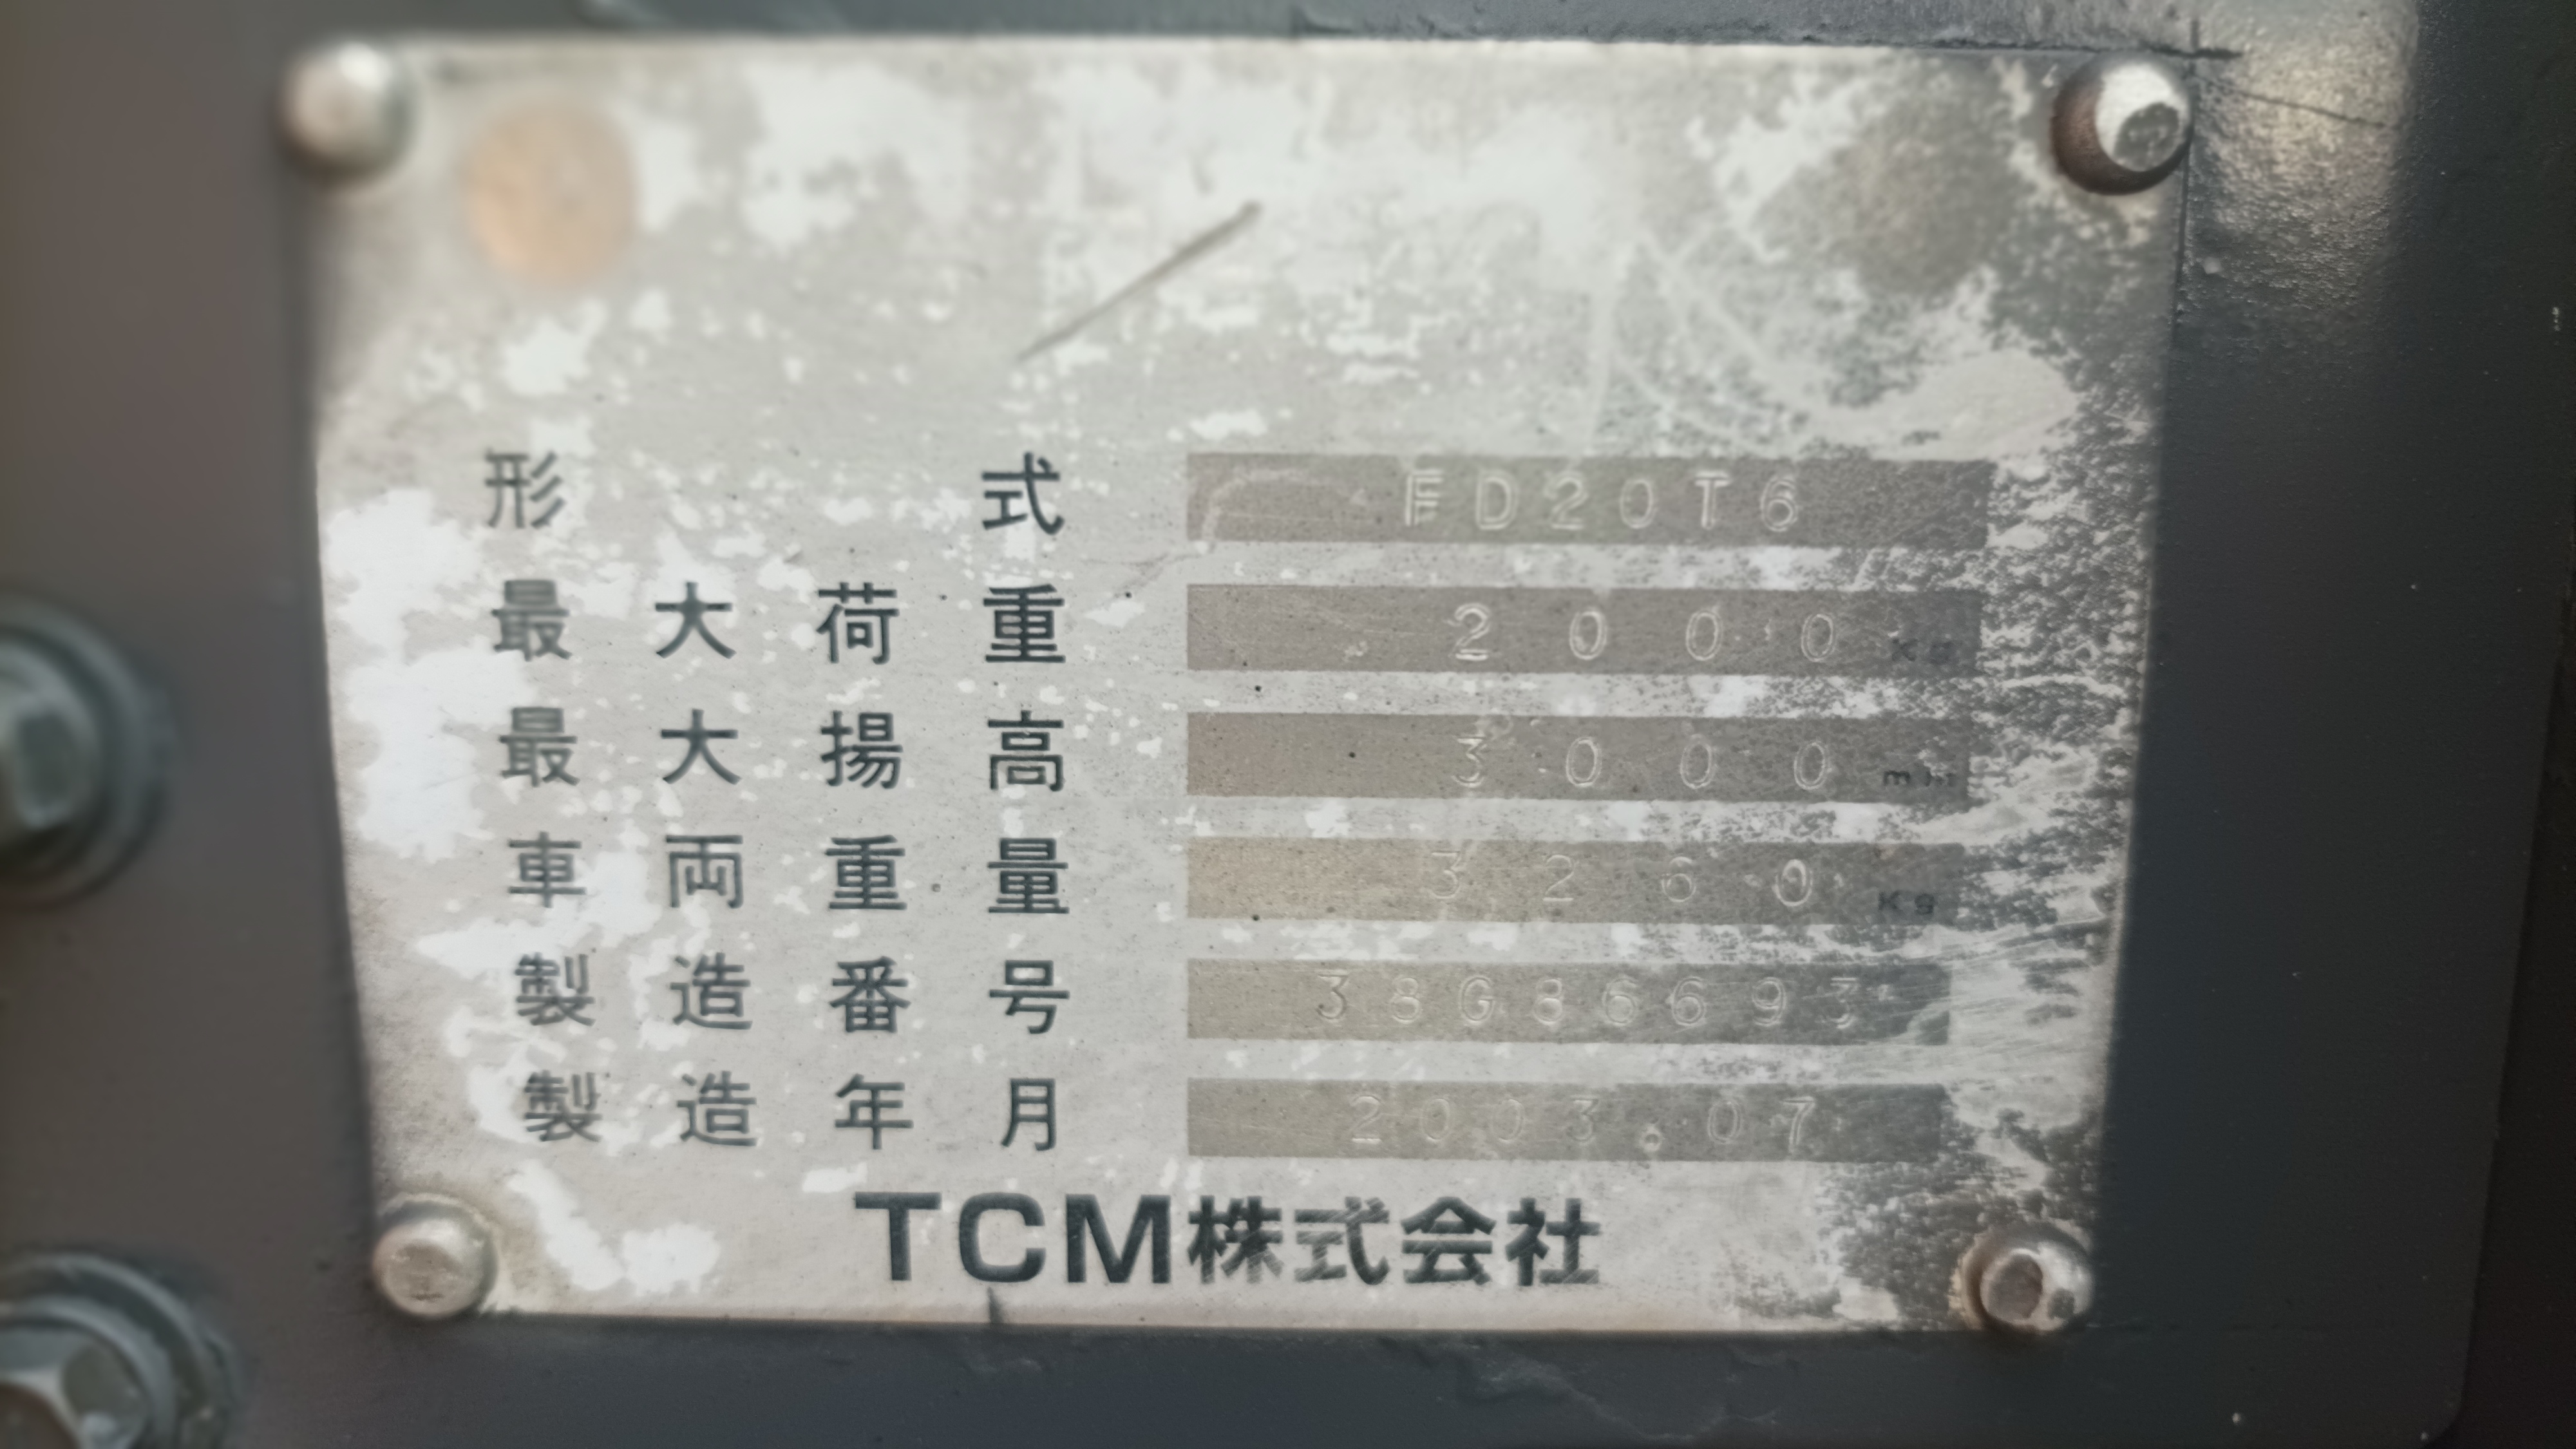 TCM FORKLIFT COUNTER FD20T6-V300, DIESEL, 2.0